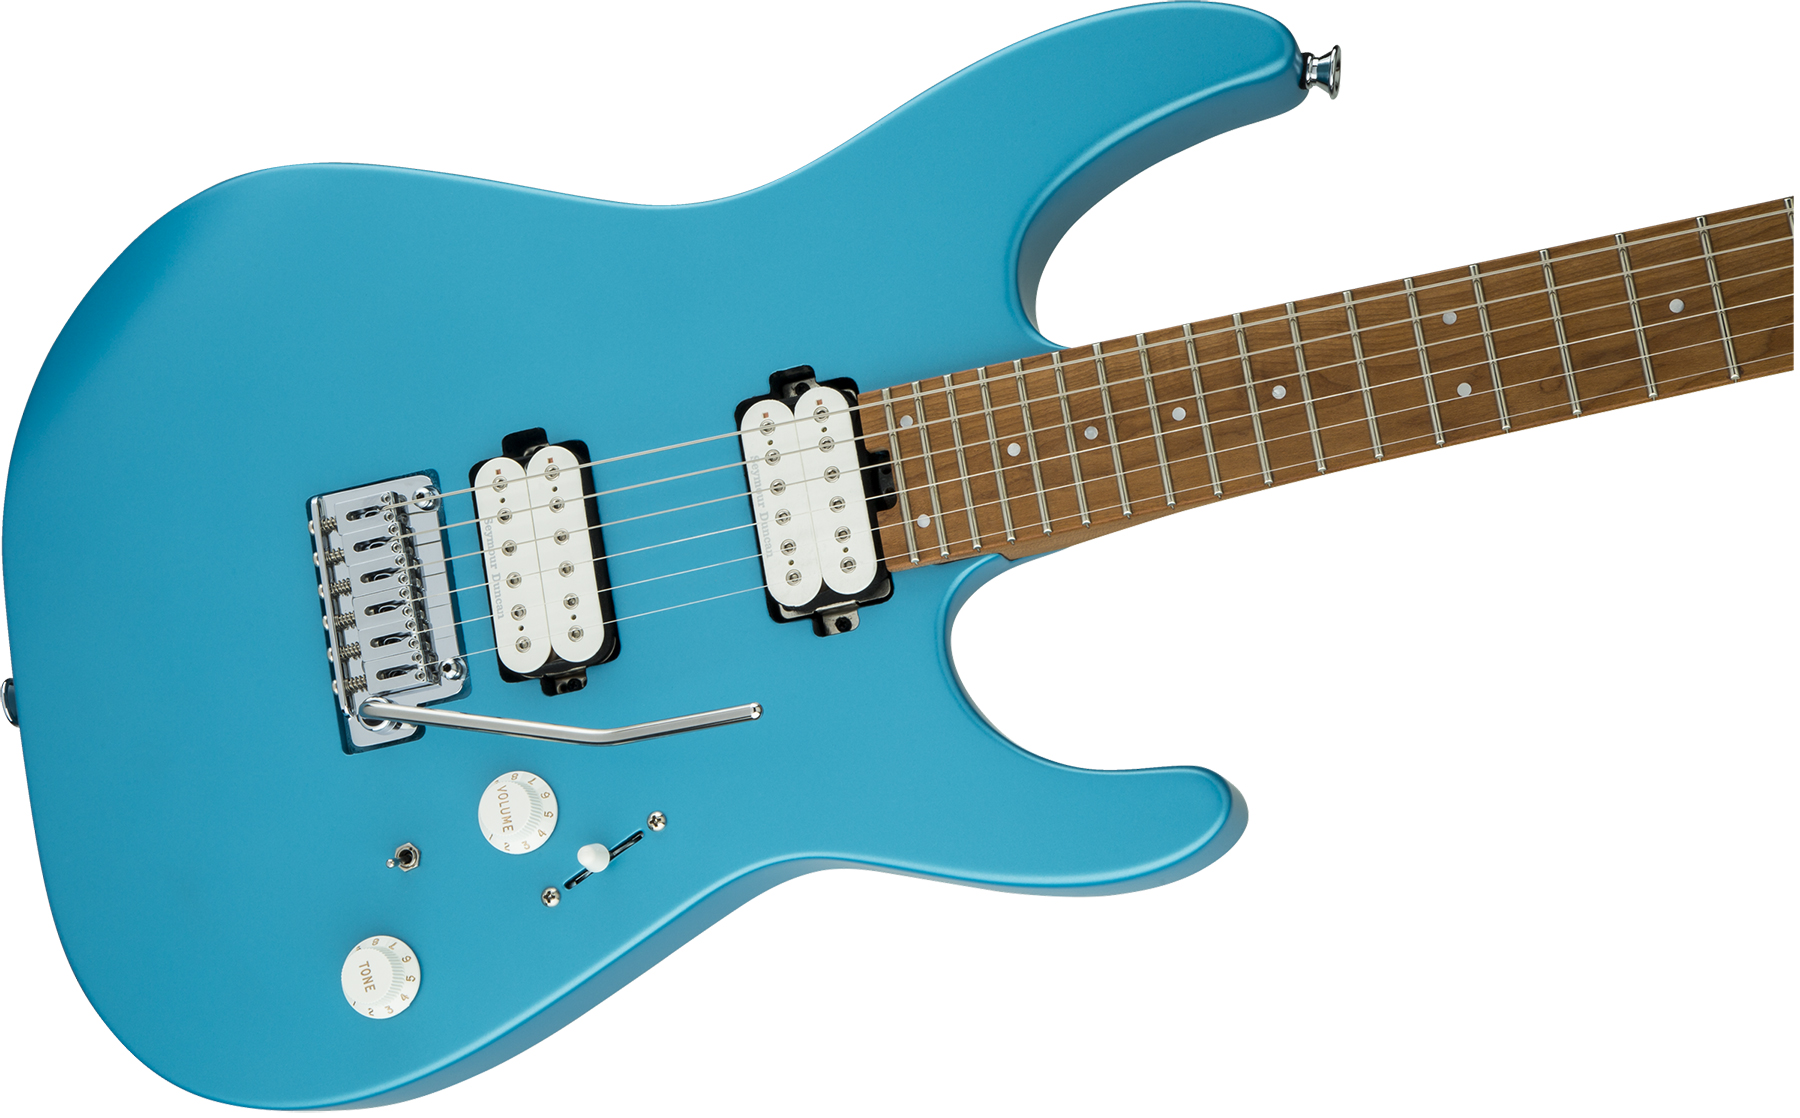 Charvel Pro-mod Dk24 Hh 2pt Cm Seymour Duncan Trem Mn - Matte Blue Frost - Elektrische gitaar in Str-vorm - Variation 2